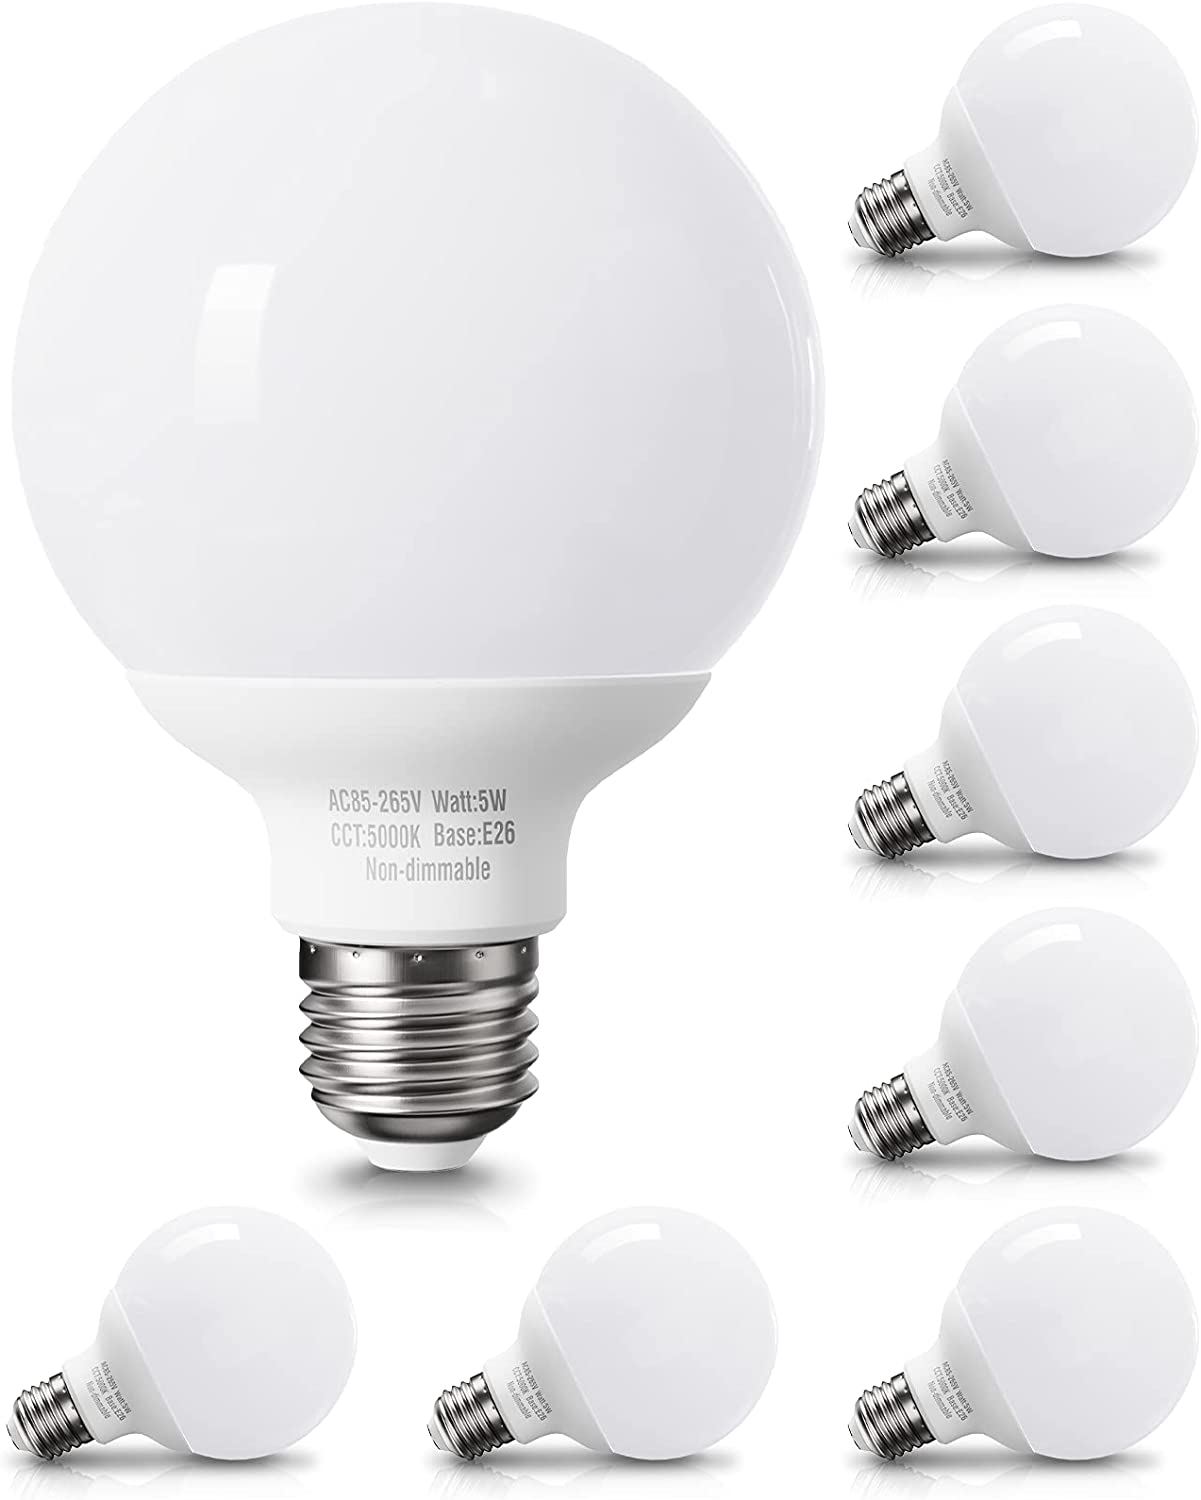 Pazetiv Daylight LED Globe Light Bulbs